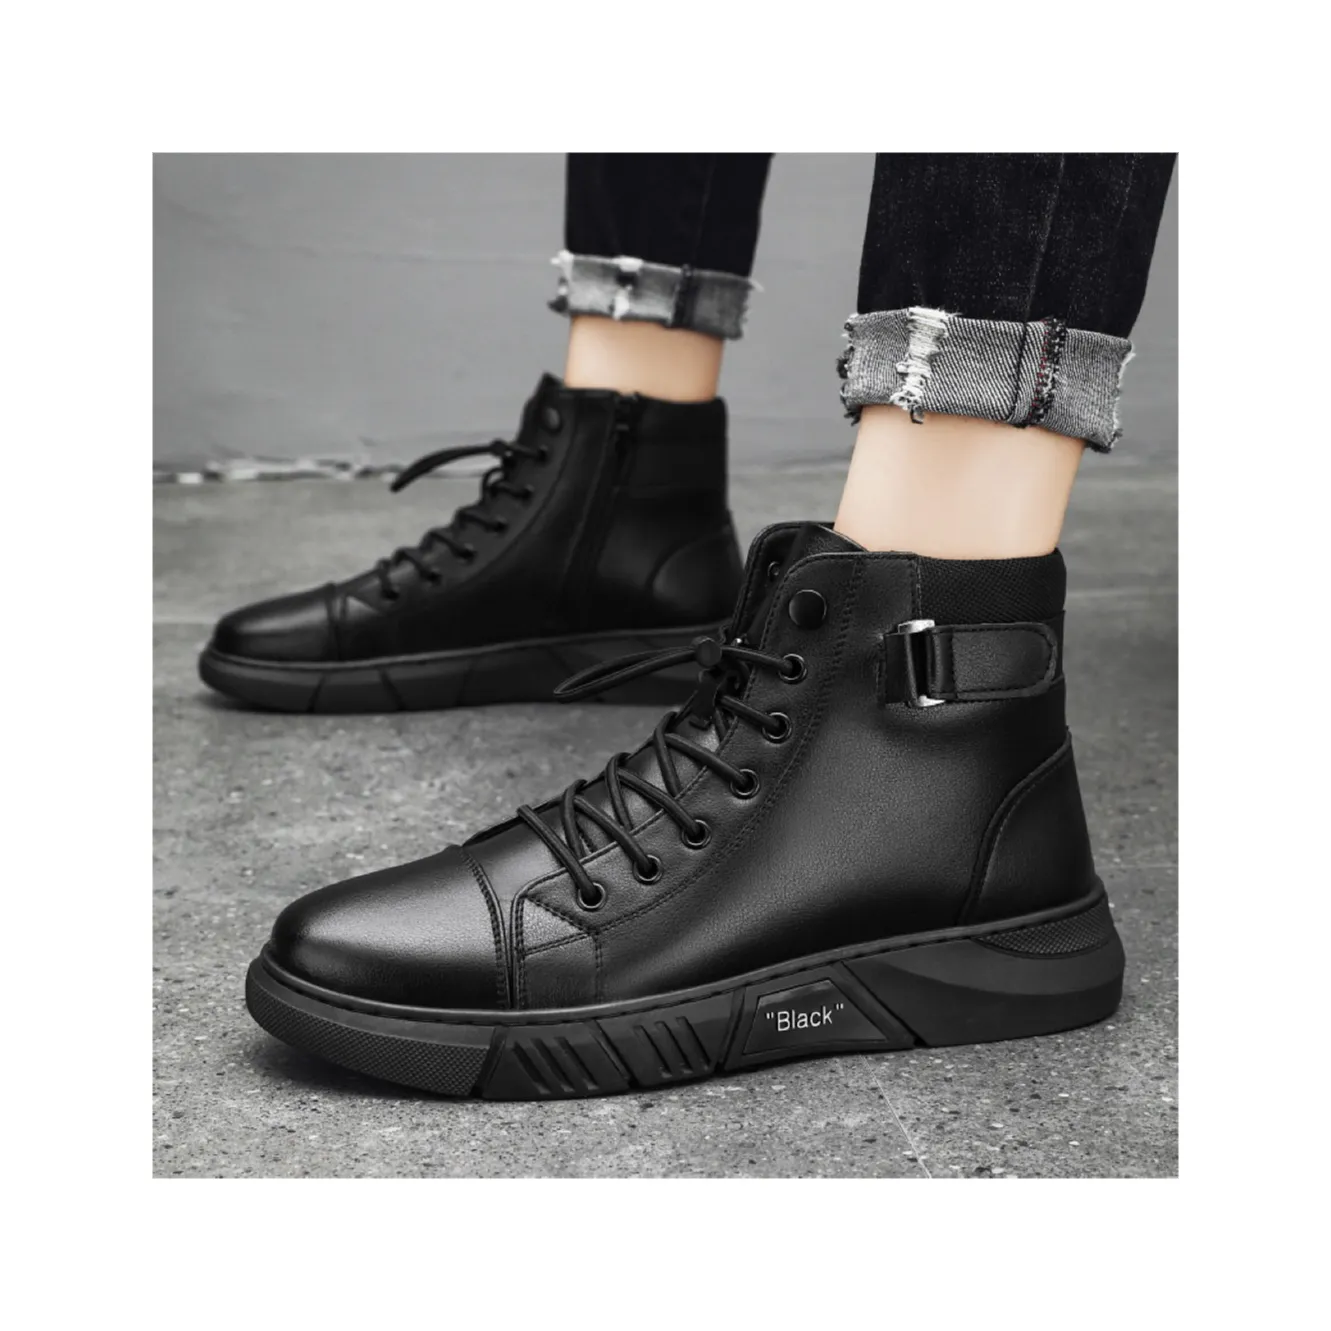 Moda de moda base de cuero de alta calidad primavera otoño hombres botas altas estudiante moda trabajo negro PU botas